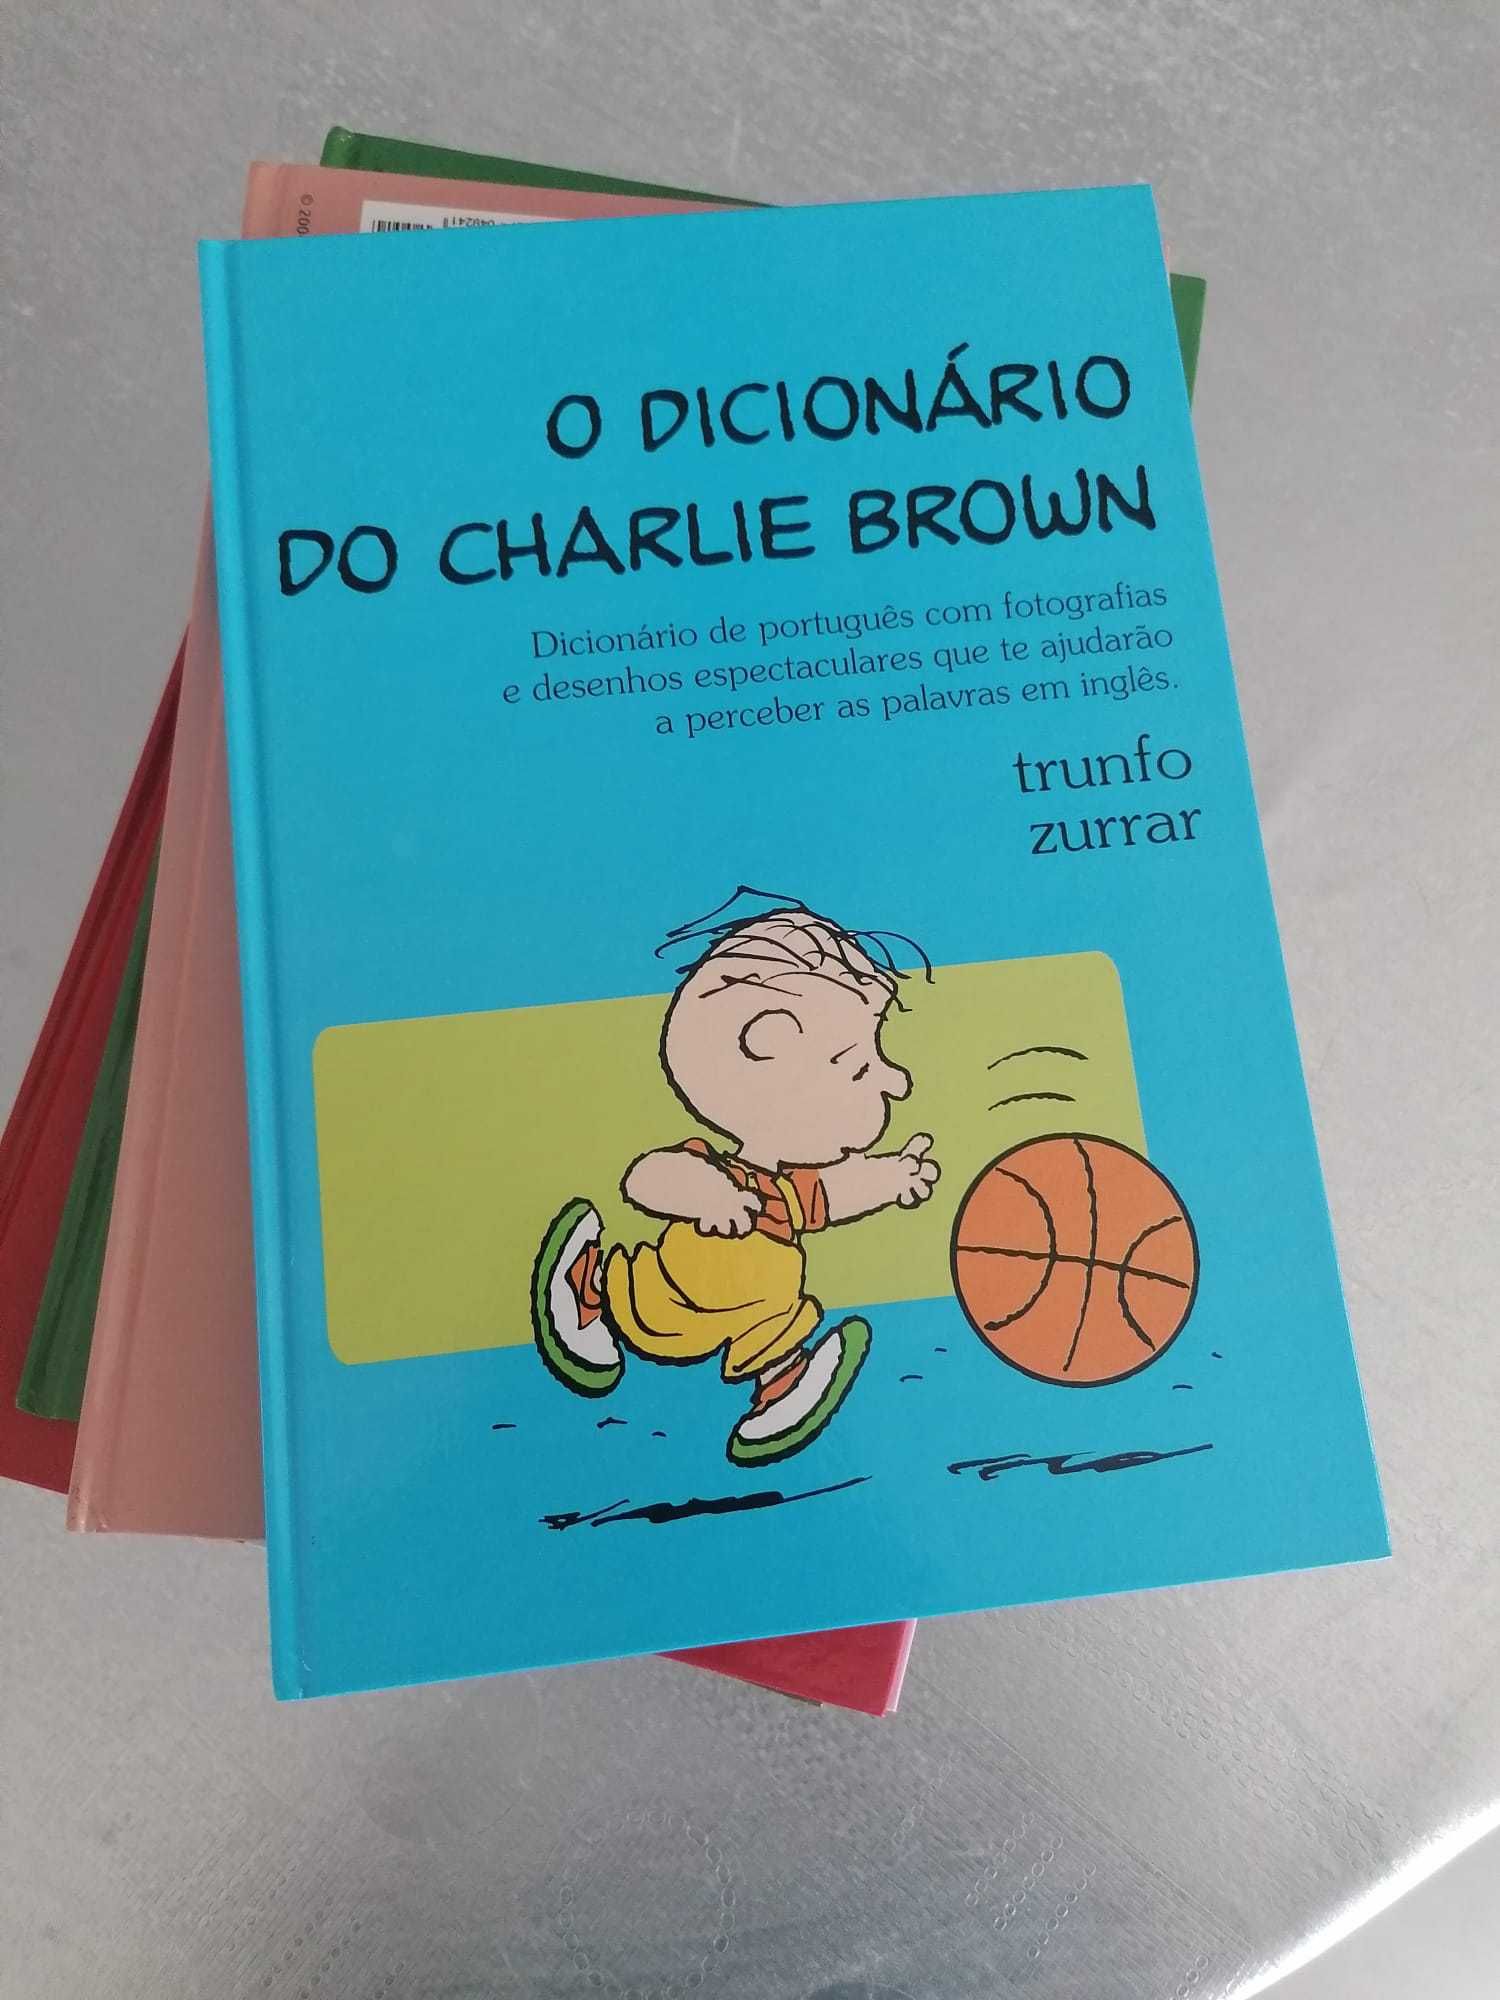 Coleção "O Dicionário do Charlie Brown" - Livro Infantil